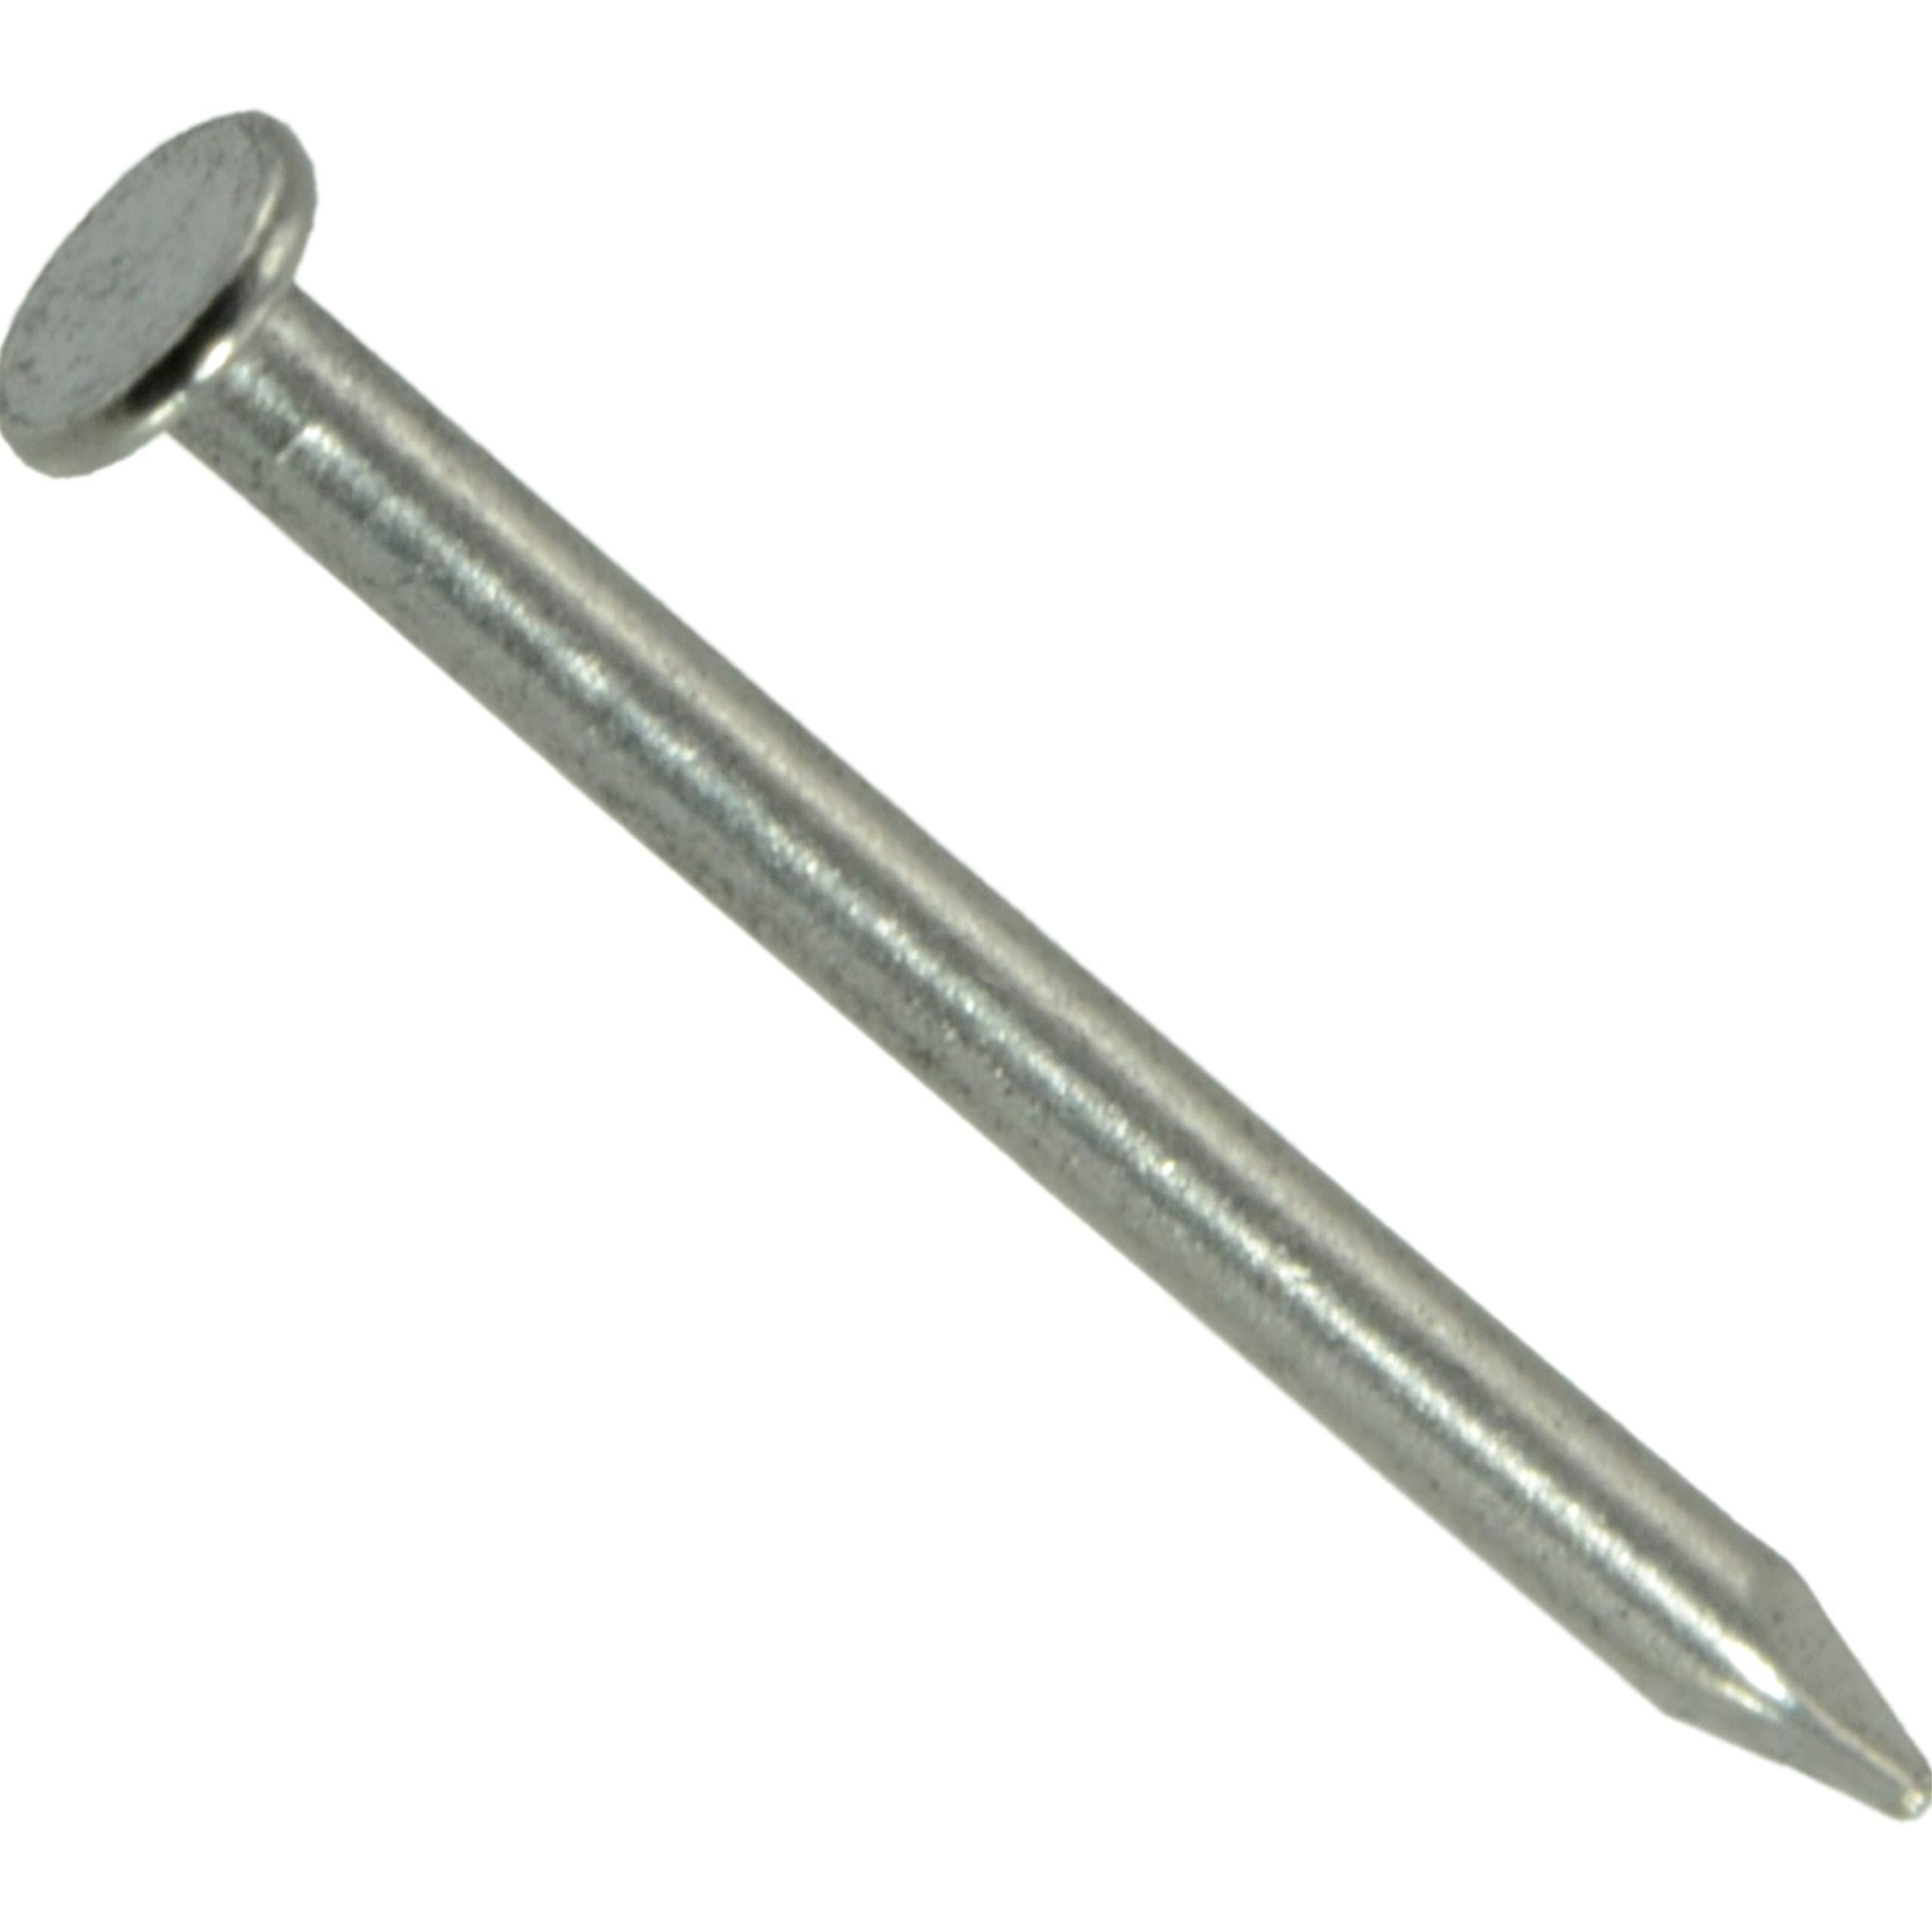 hard-to-find fastener 014973213244 wire nails, 18 x 5/8-inch, 980-piece